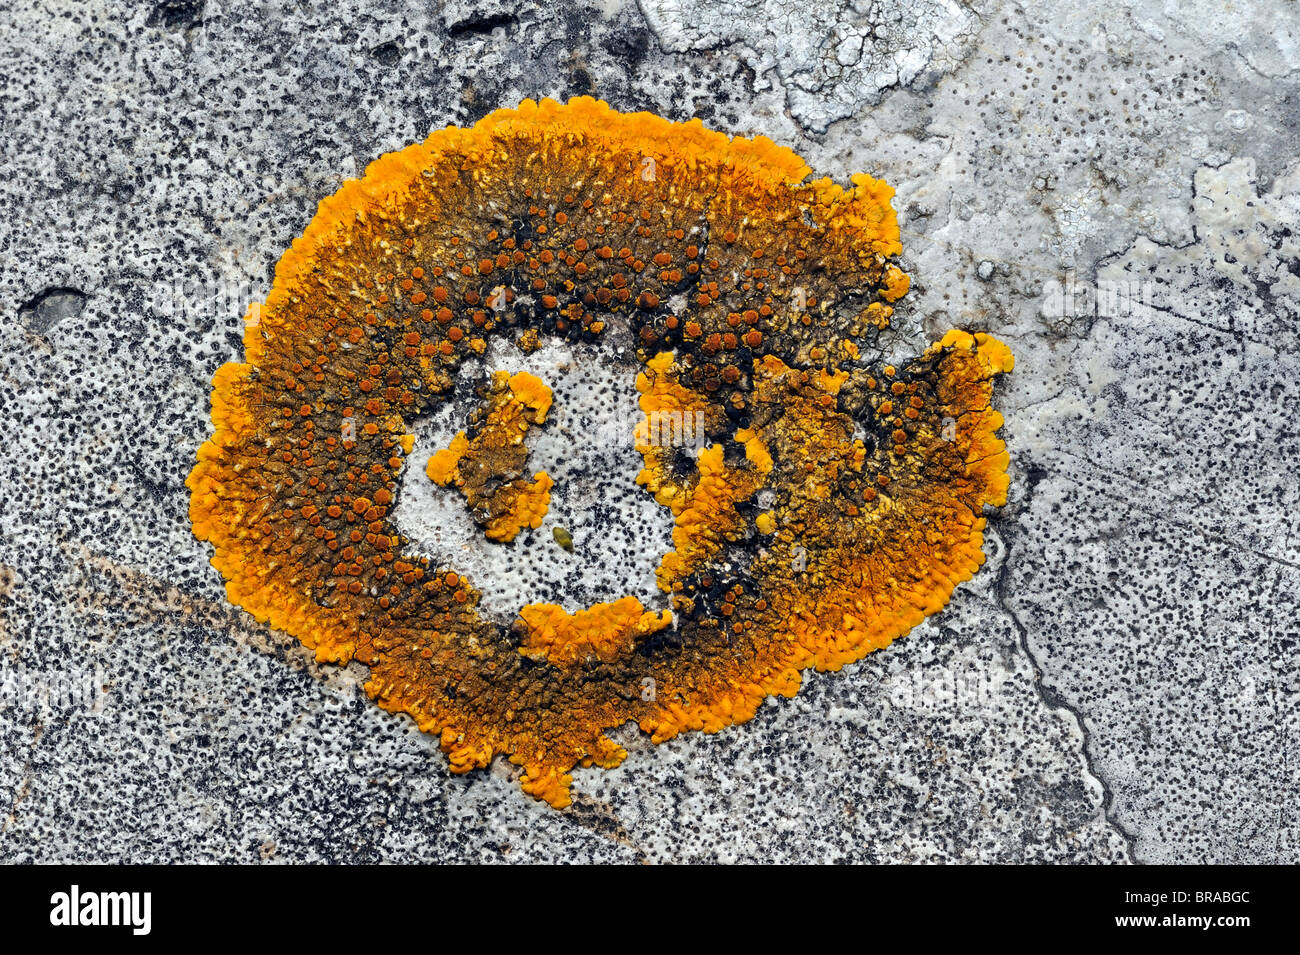 Orange lichen (Caloplaca aurantia) on limestone rock, Belgium Stock Photo